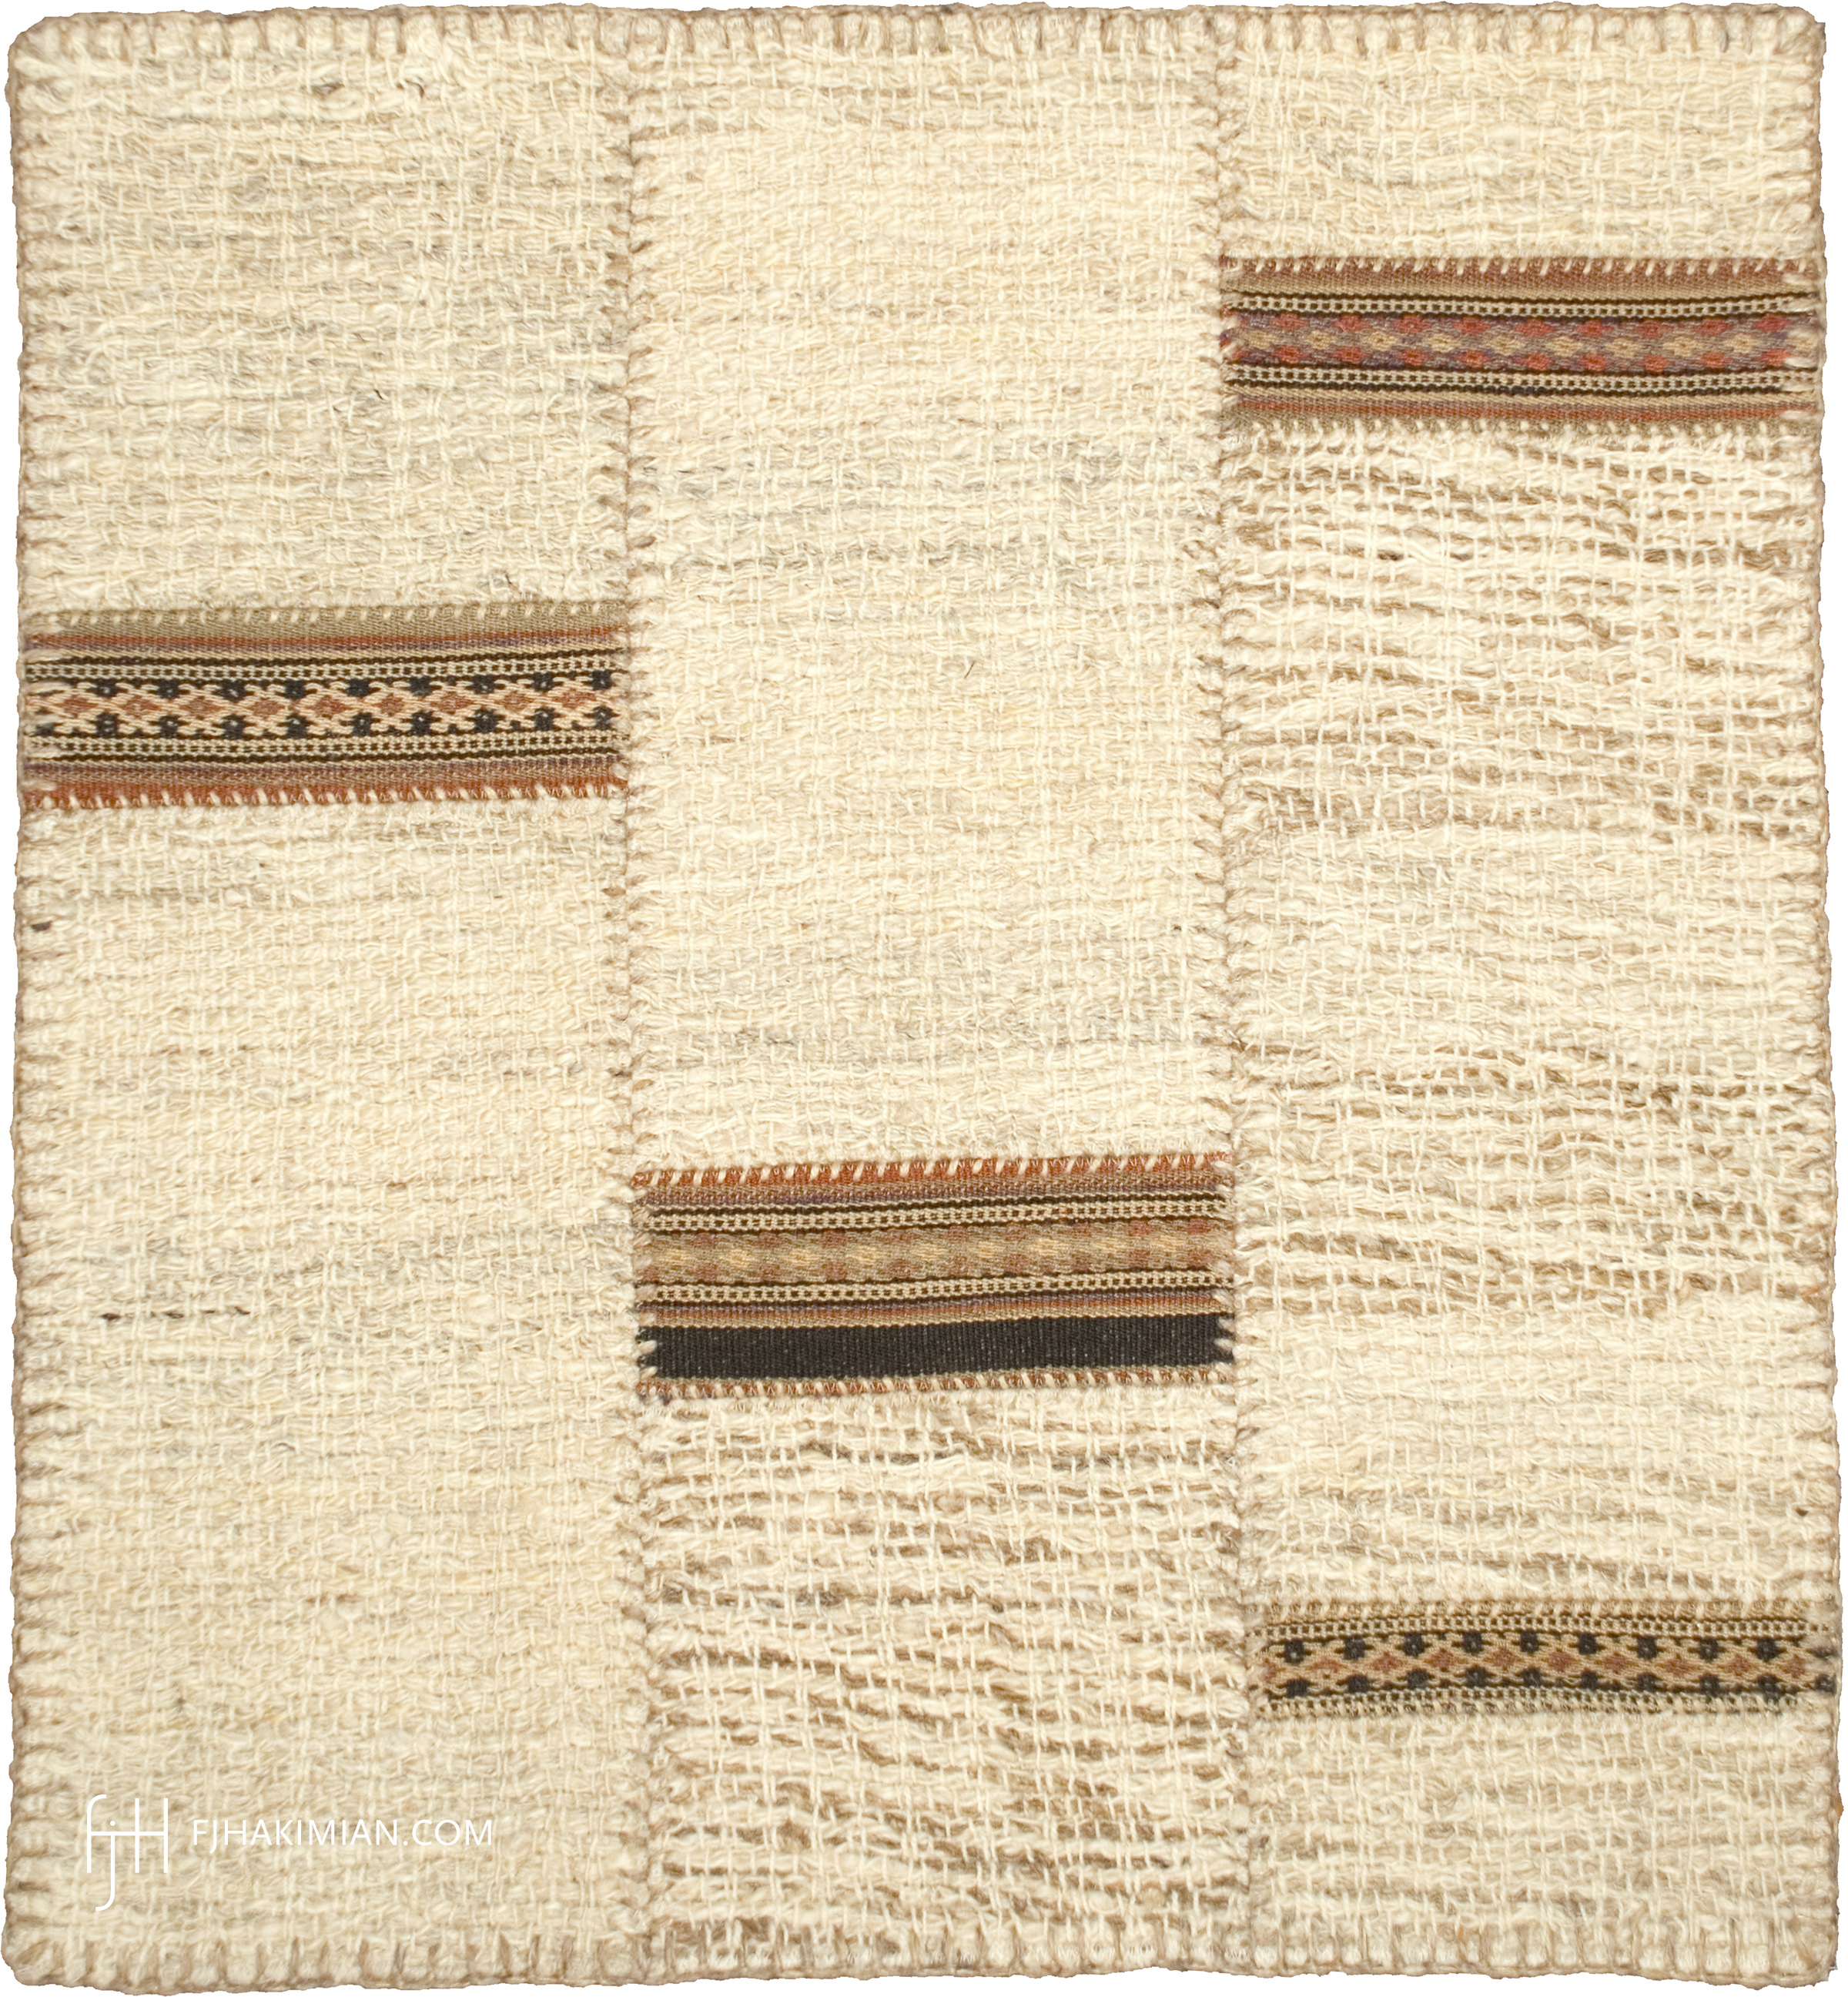 FJ Hakimian | 37112 | Custom Carpet